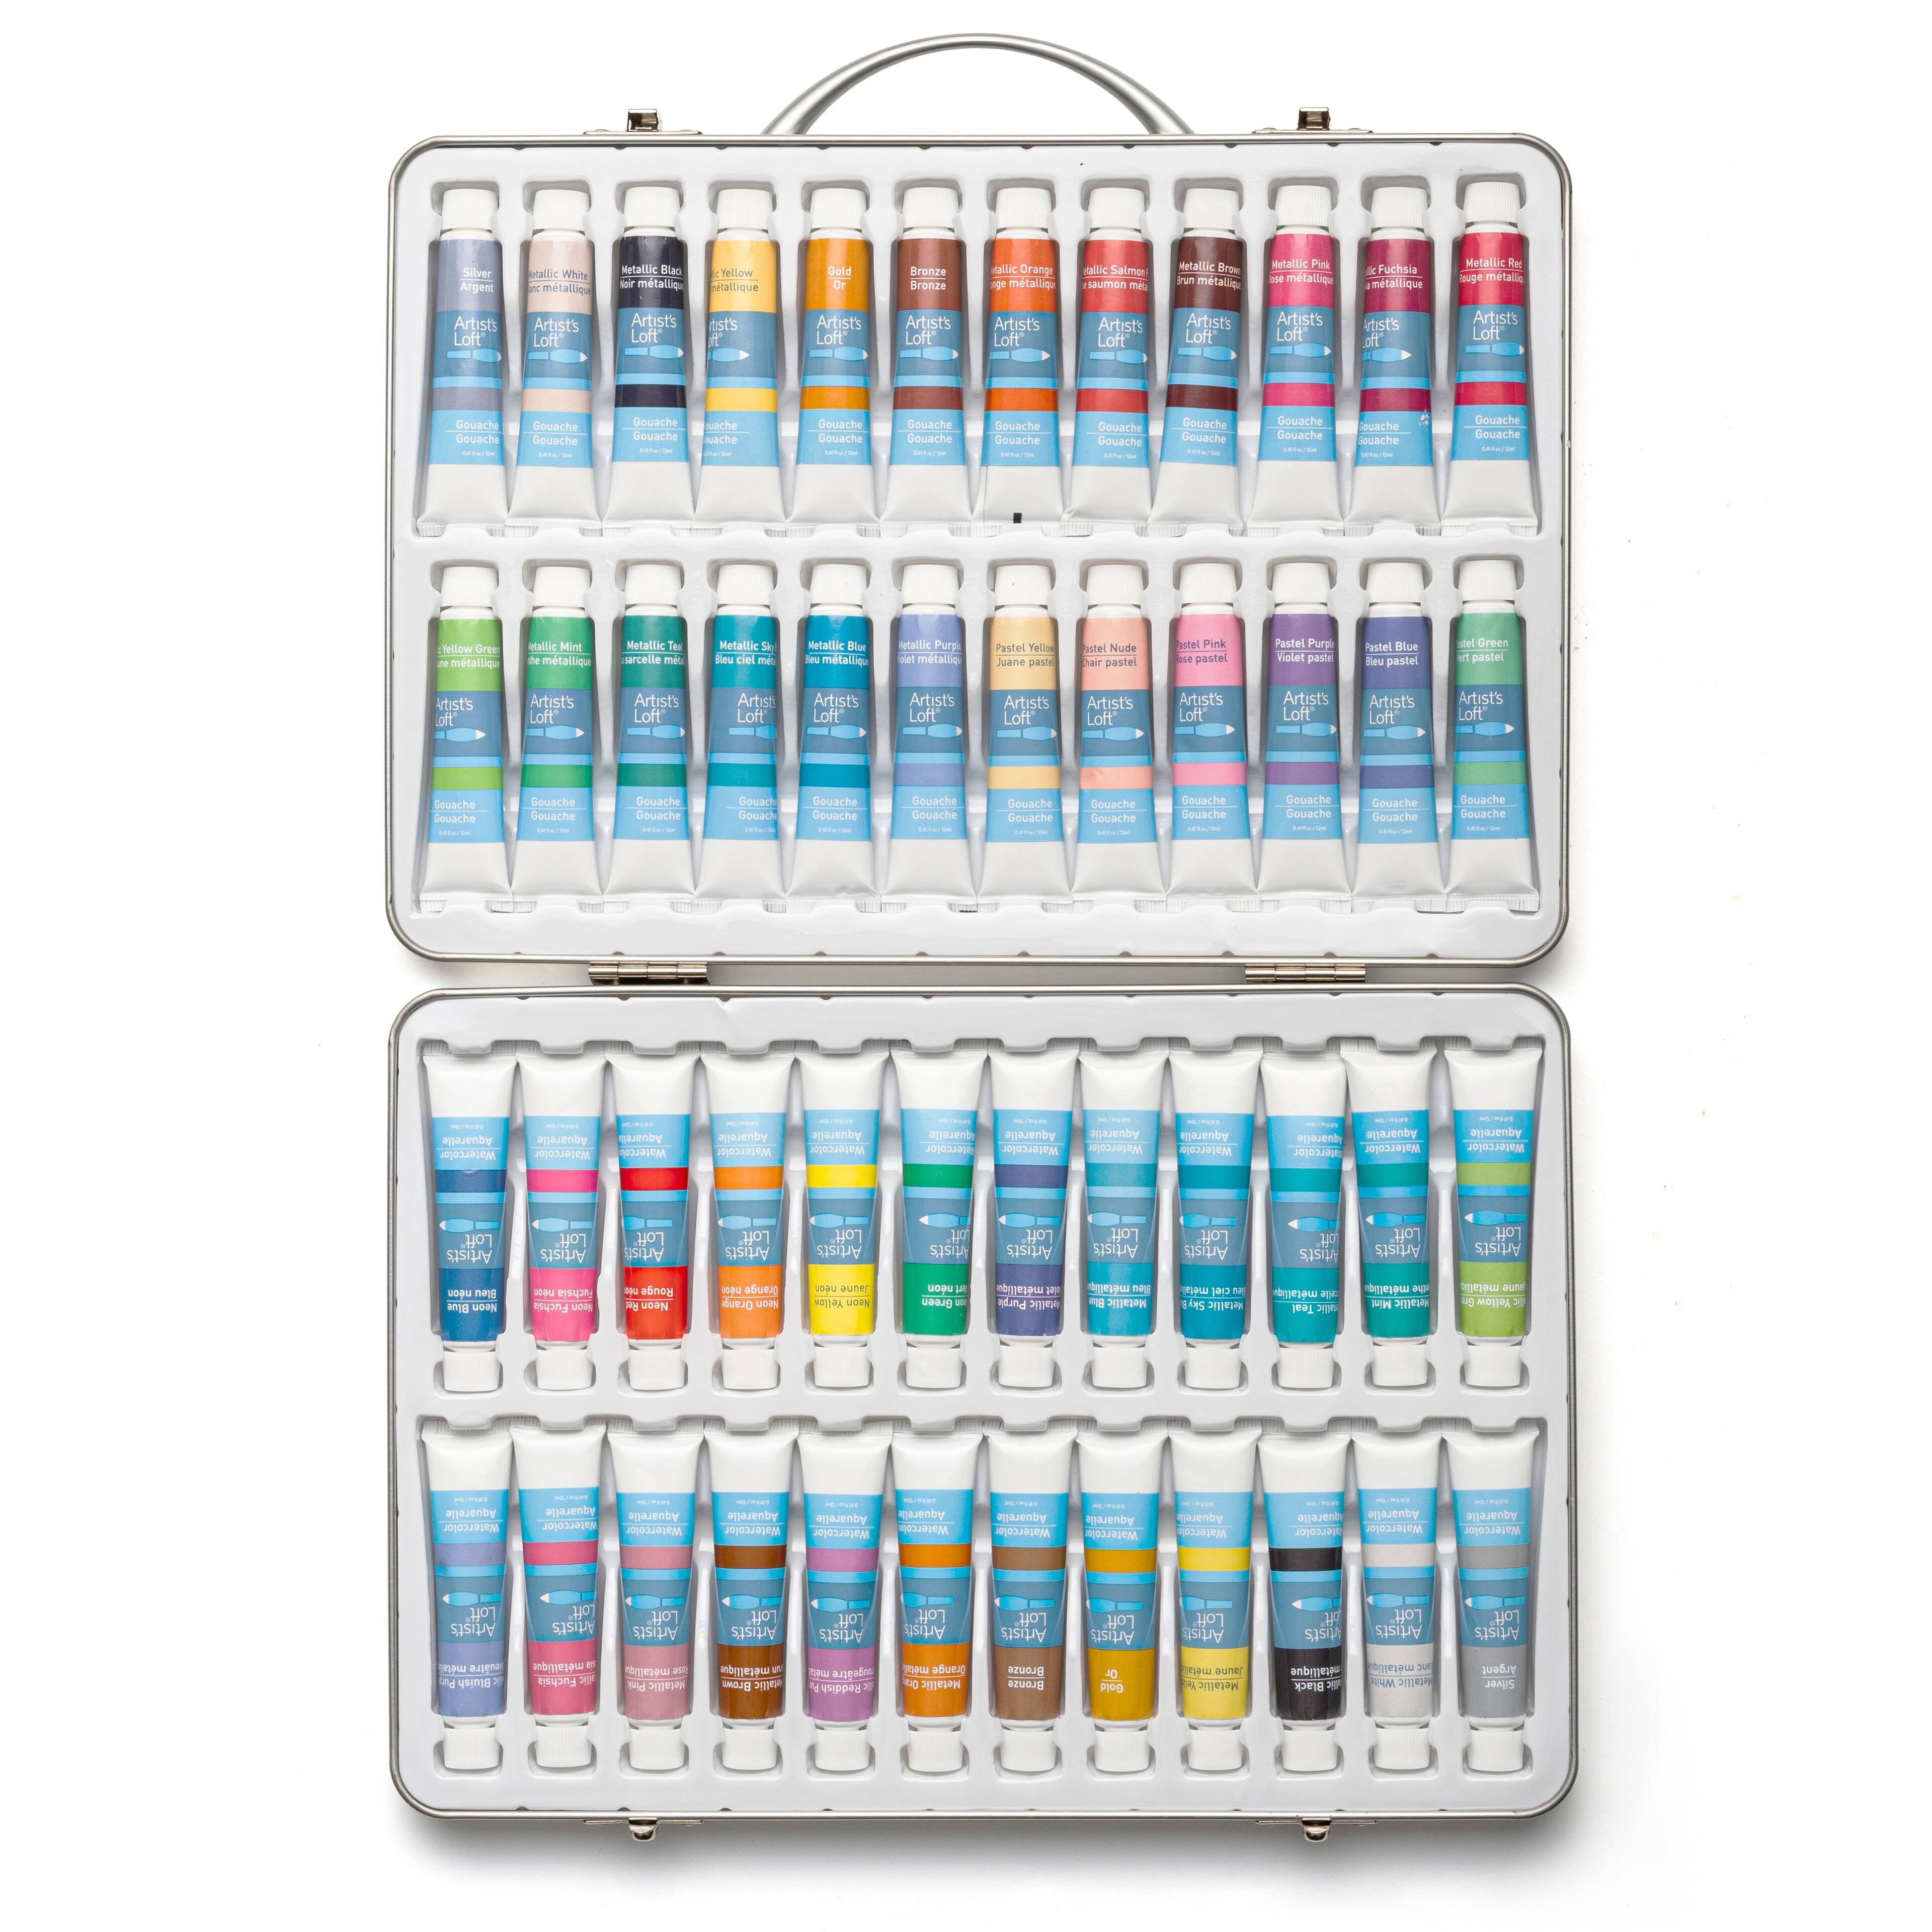 HIMI Gouache Paint Tubes Set, 36 Colors, 12ml, 0.4 US fl oz Tubes,Gouache  Paint, Use for Canvas and Paper, Art Supplies for Professionals